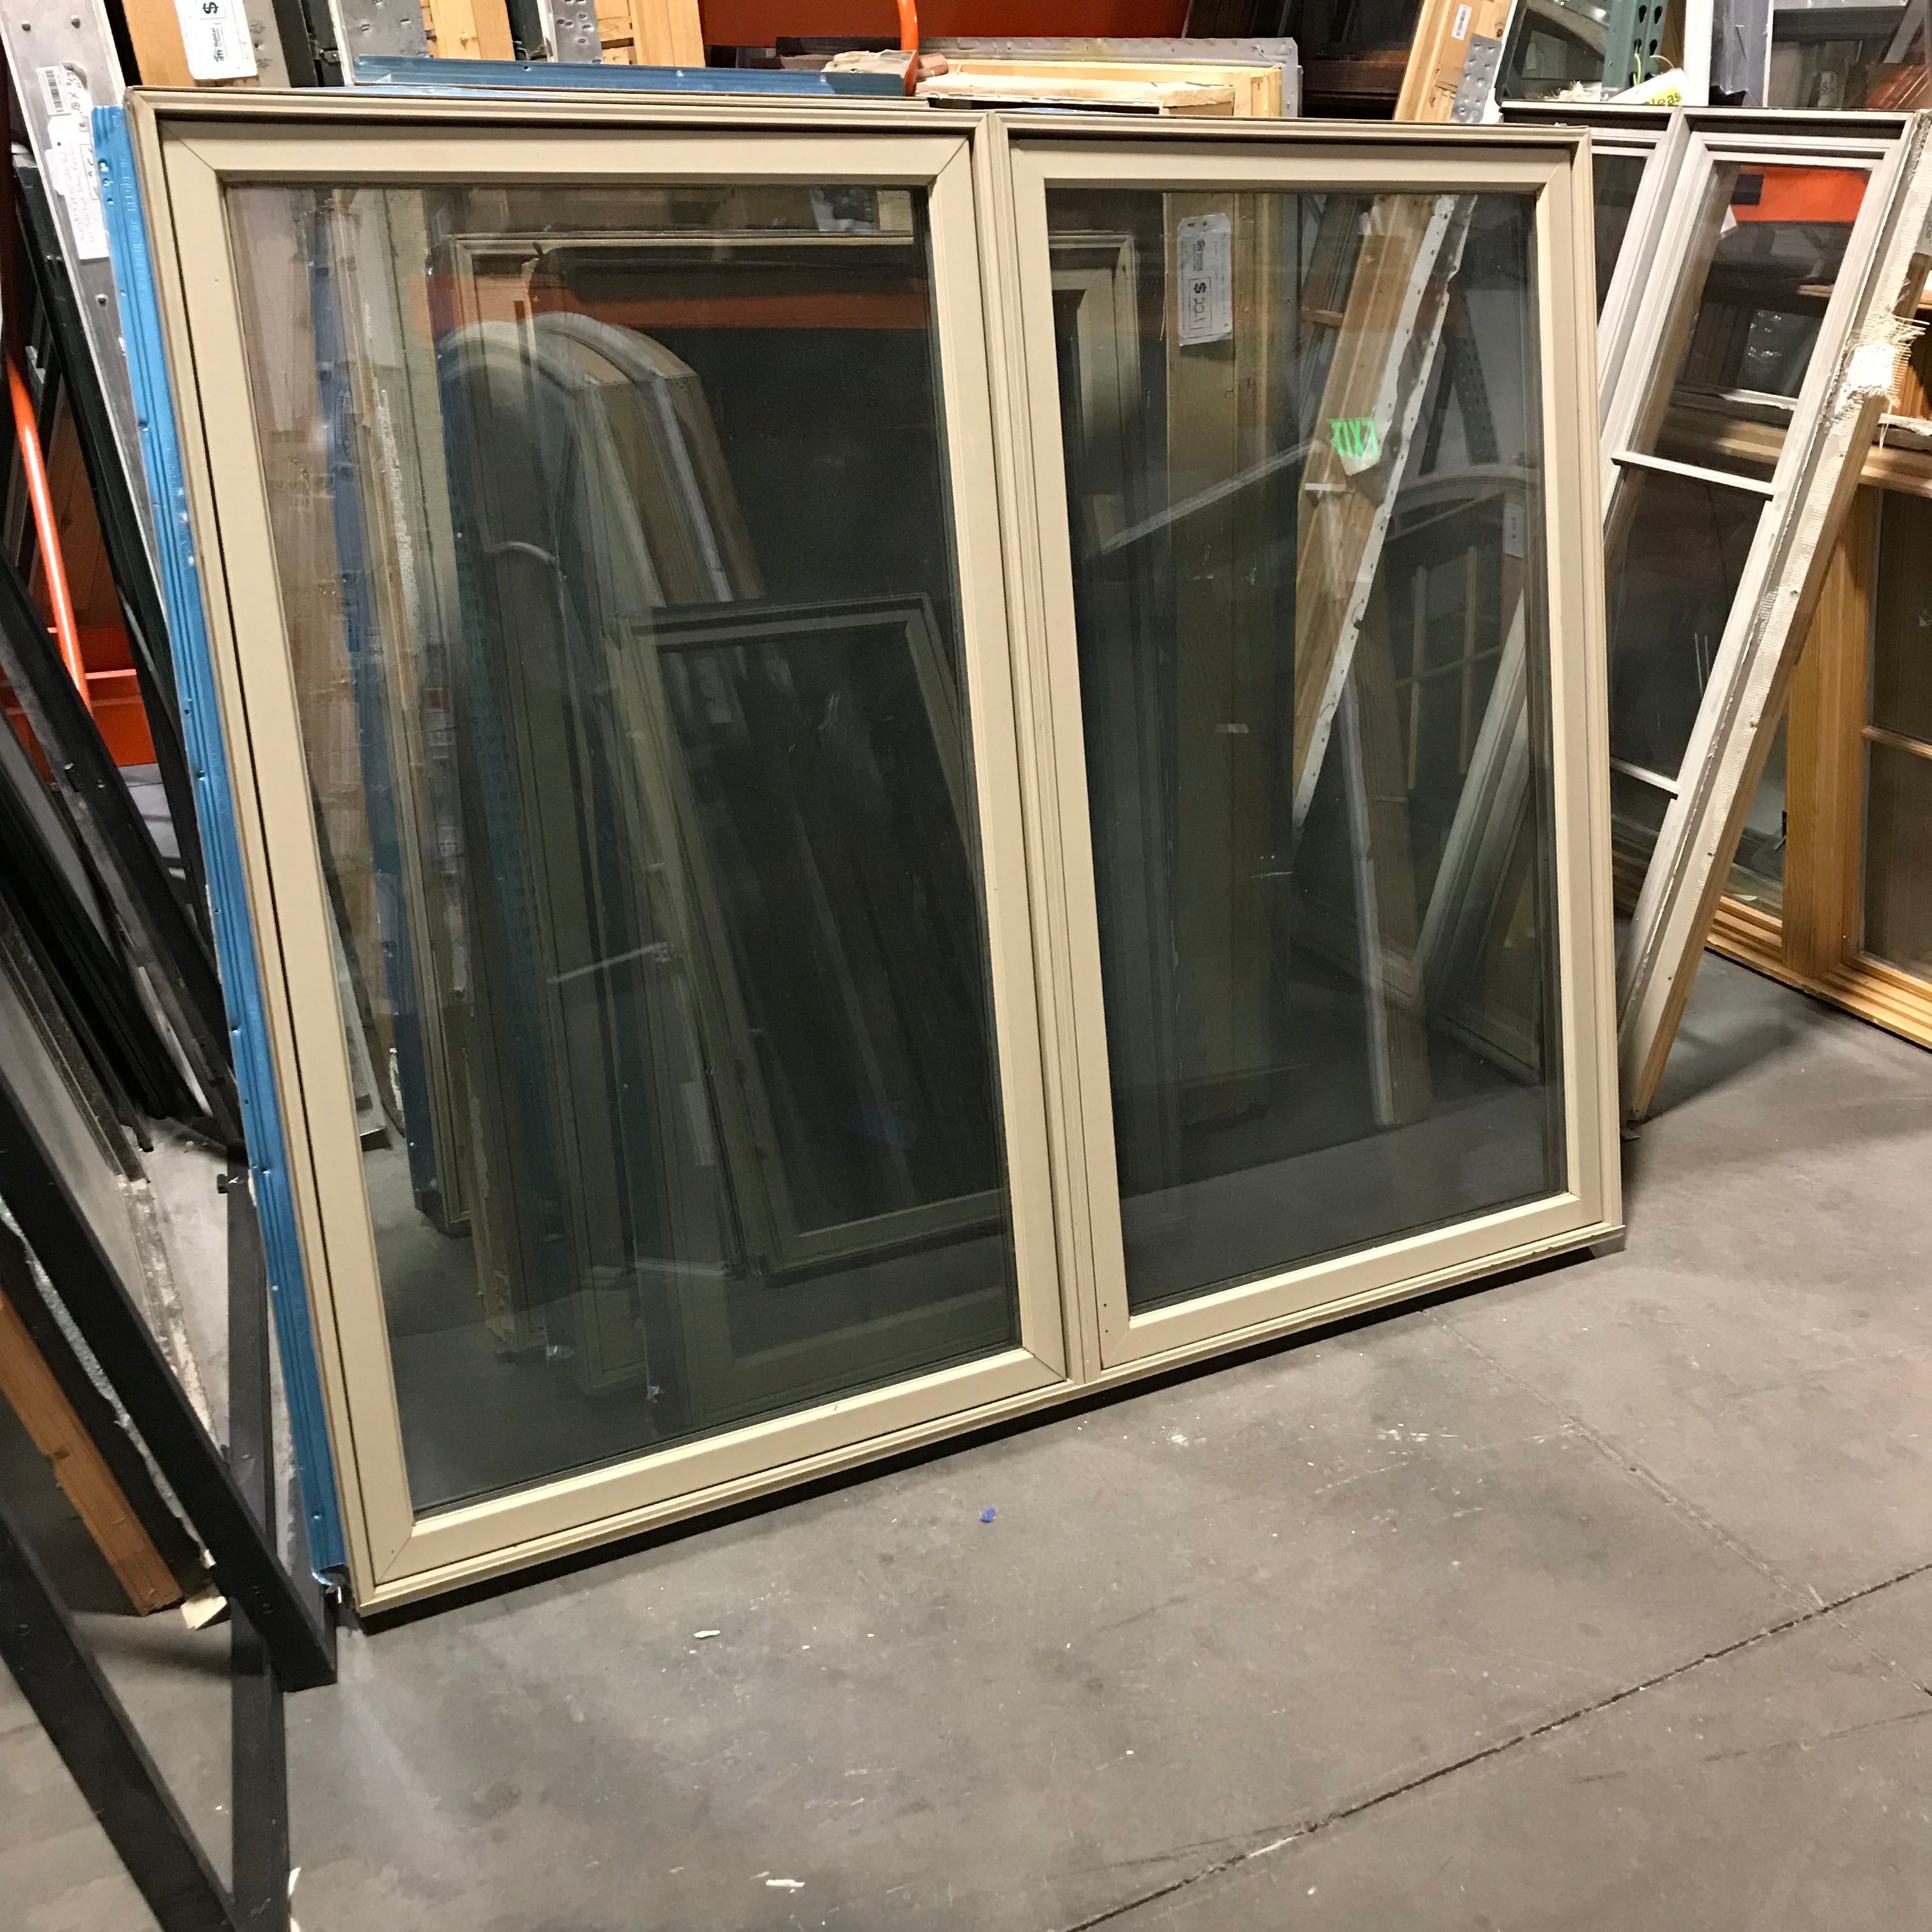 50"x 53"x 5" Tan Metal Clad Double Casement Exterior Window